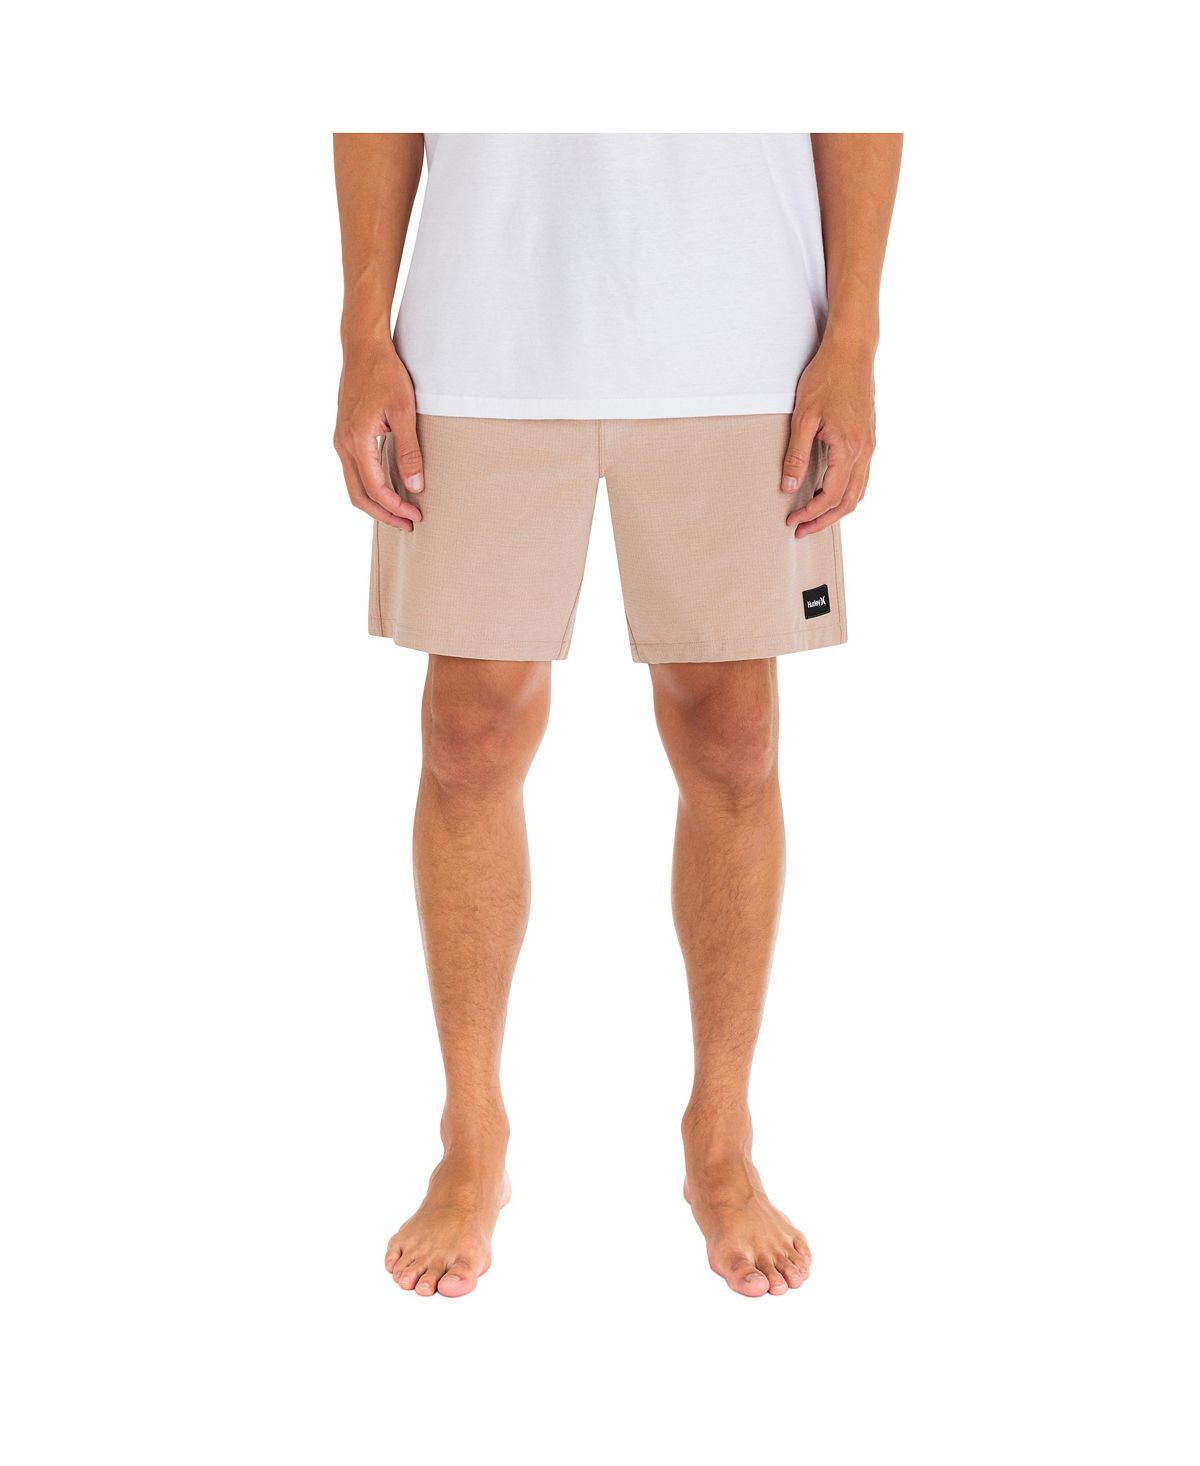 Мужские прогулочные шорты Phantom Zuma II Volley со шнурком, 18 дюймов Hurley цена и фото